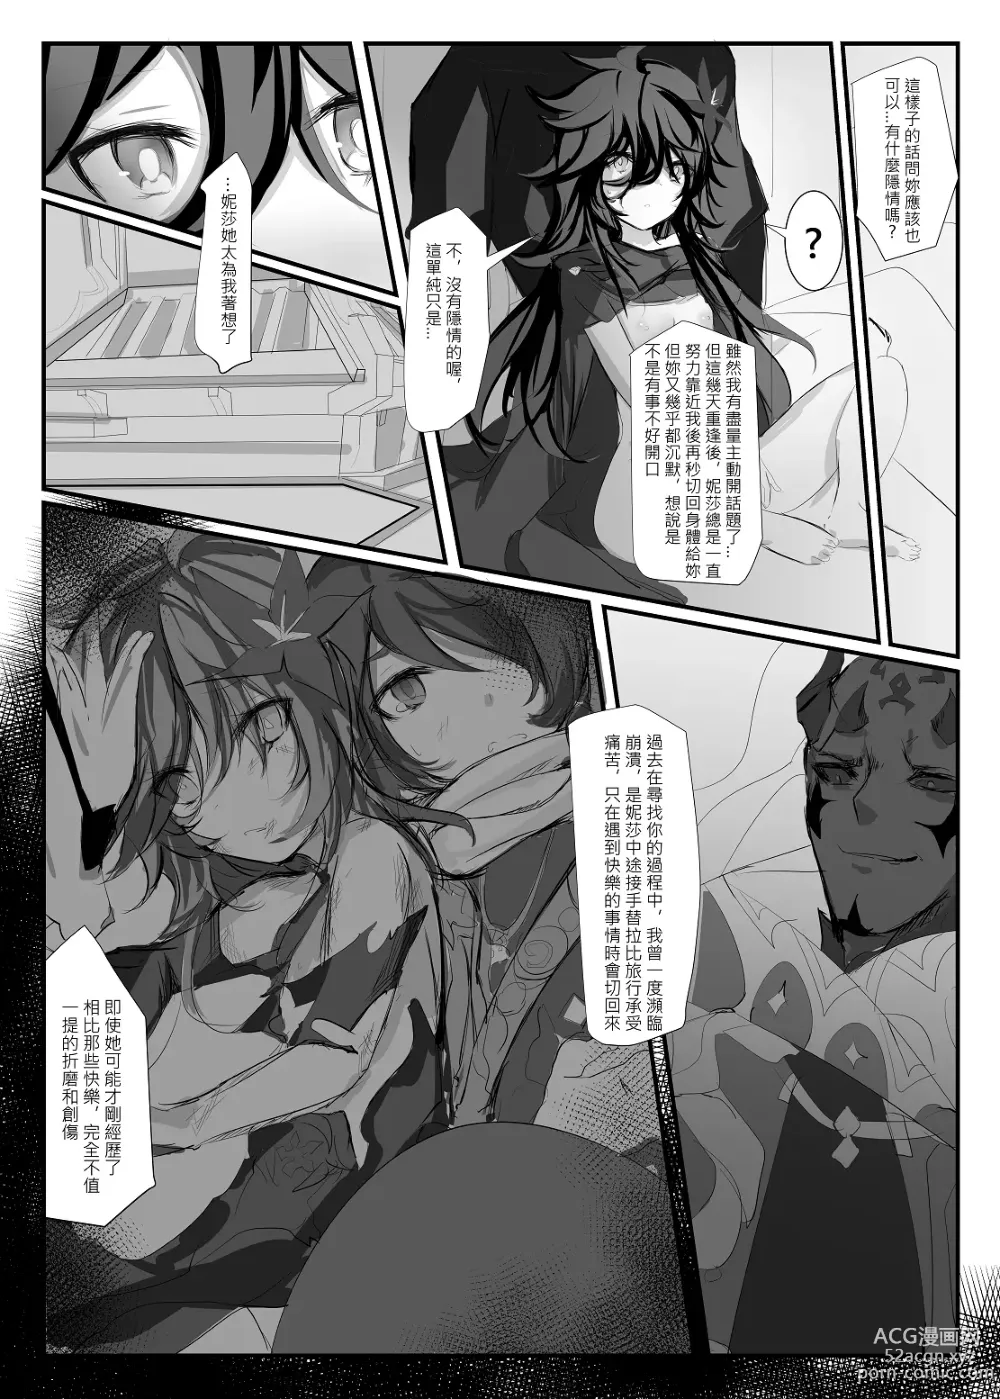 Page 24 of doujinshi ELSWORD:TYPE-V (decensored)